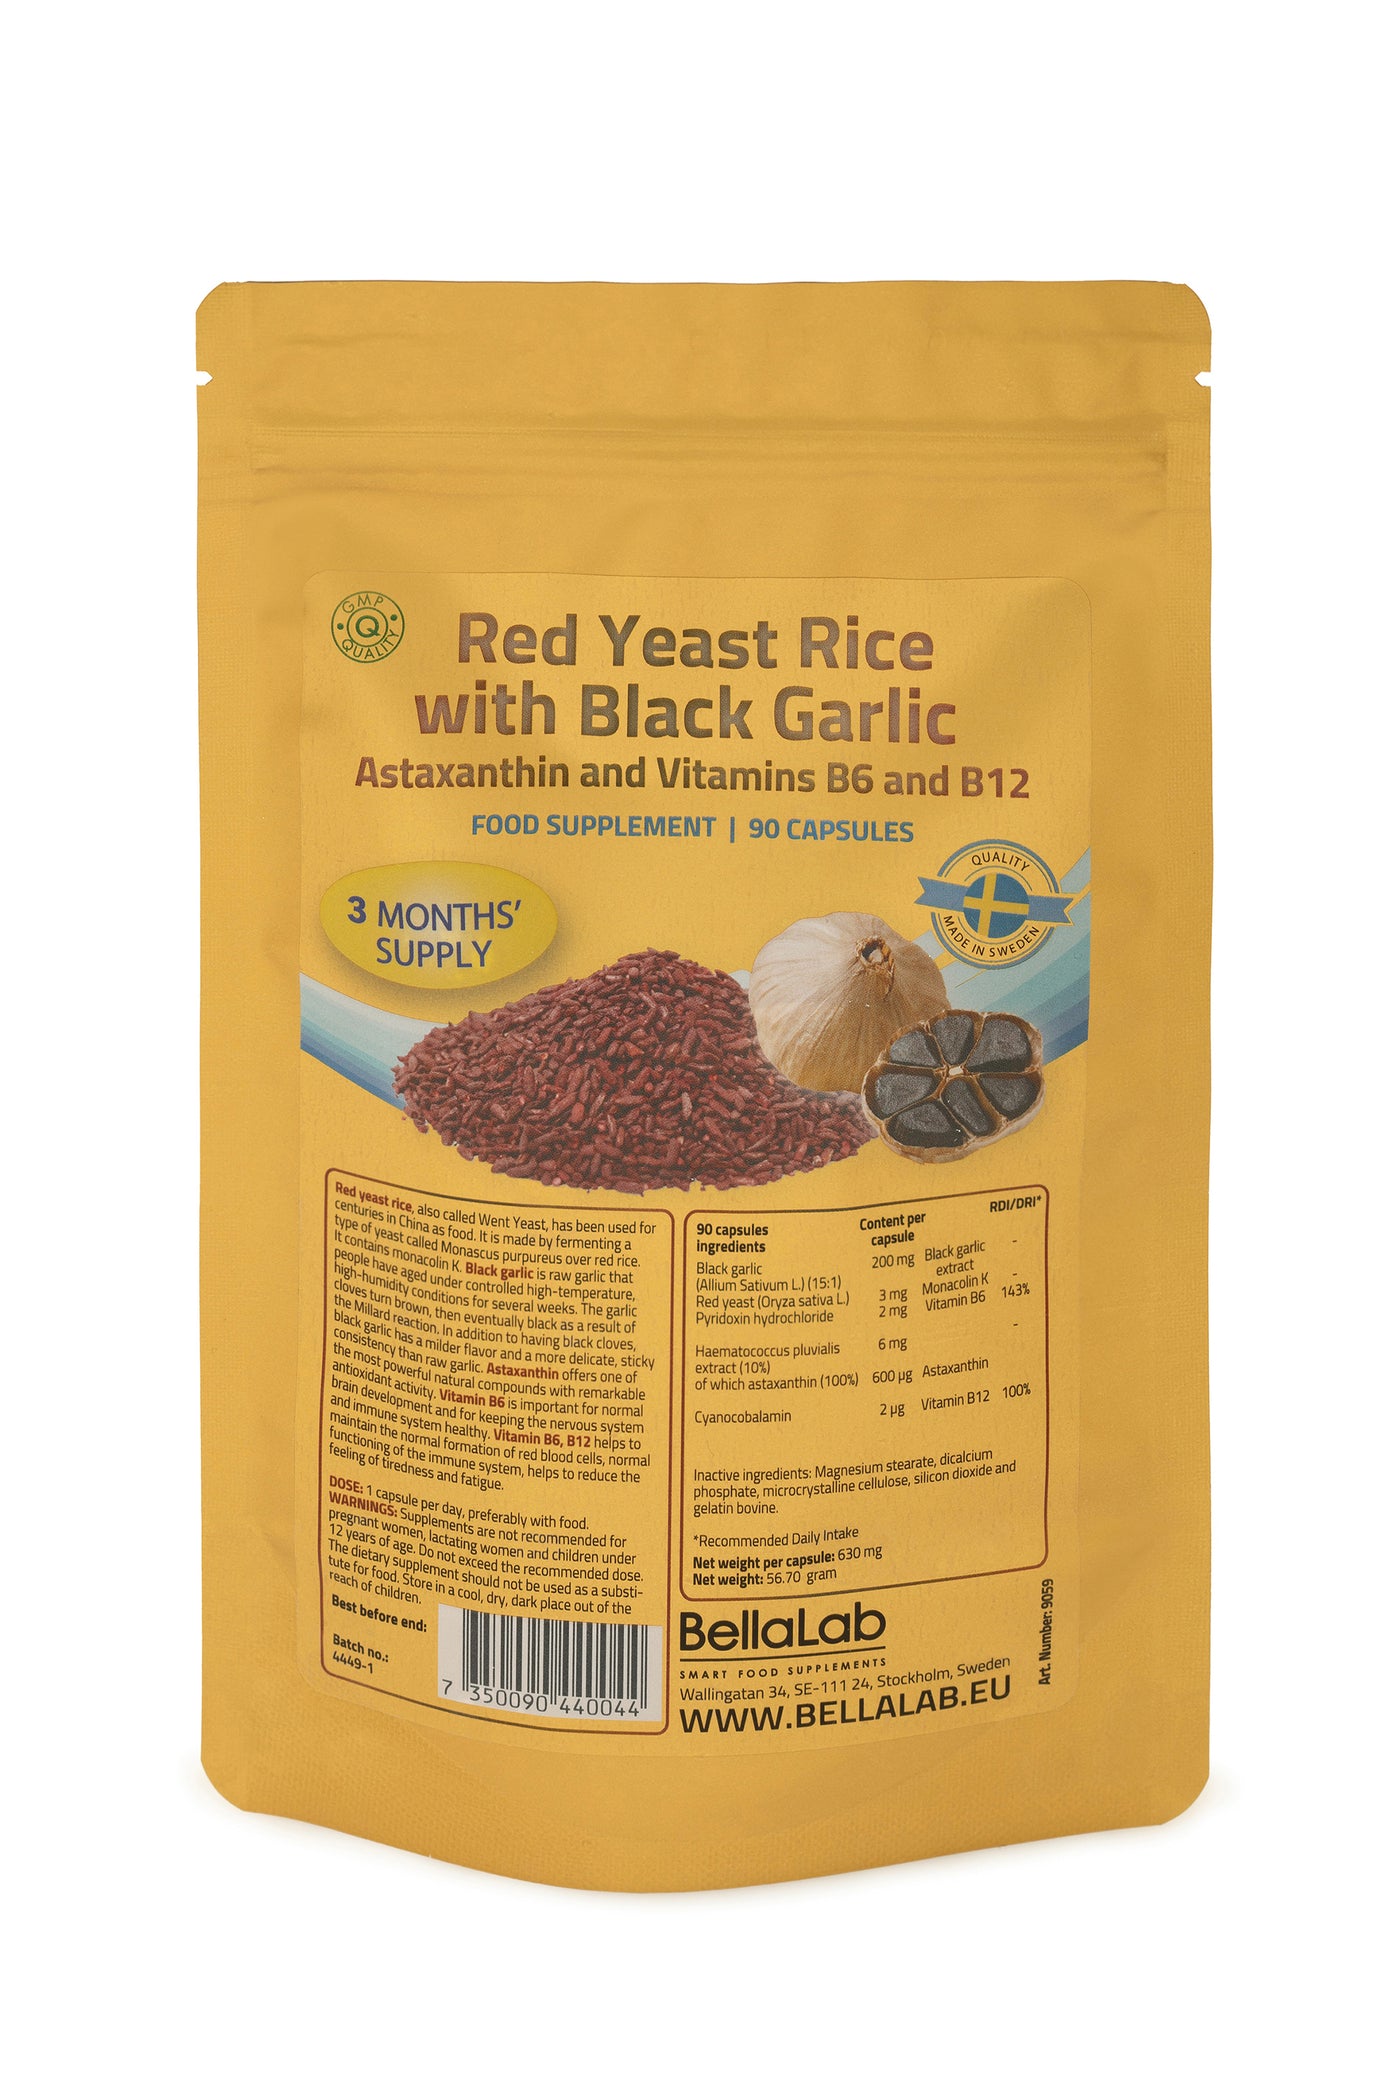 Raudonieji mielių ryžiai su juoduoju česnaku, astaksantinu bei vitaminais B6, B12